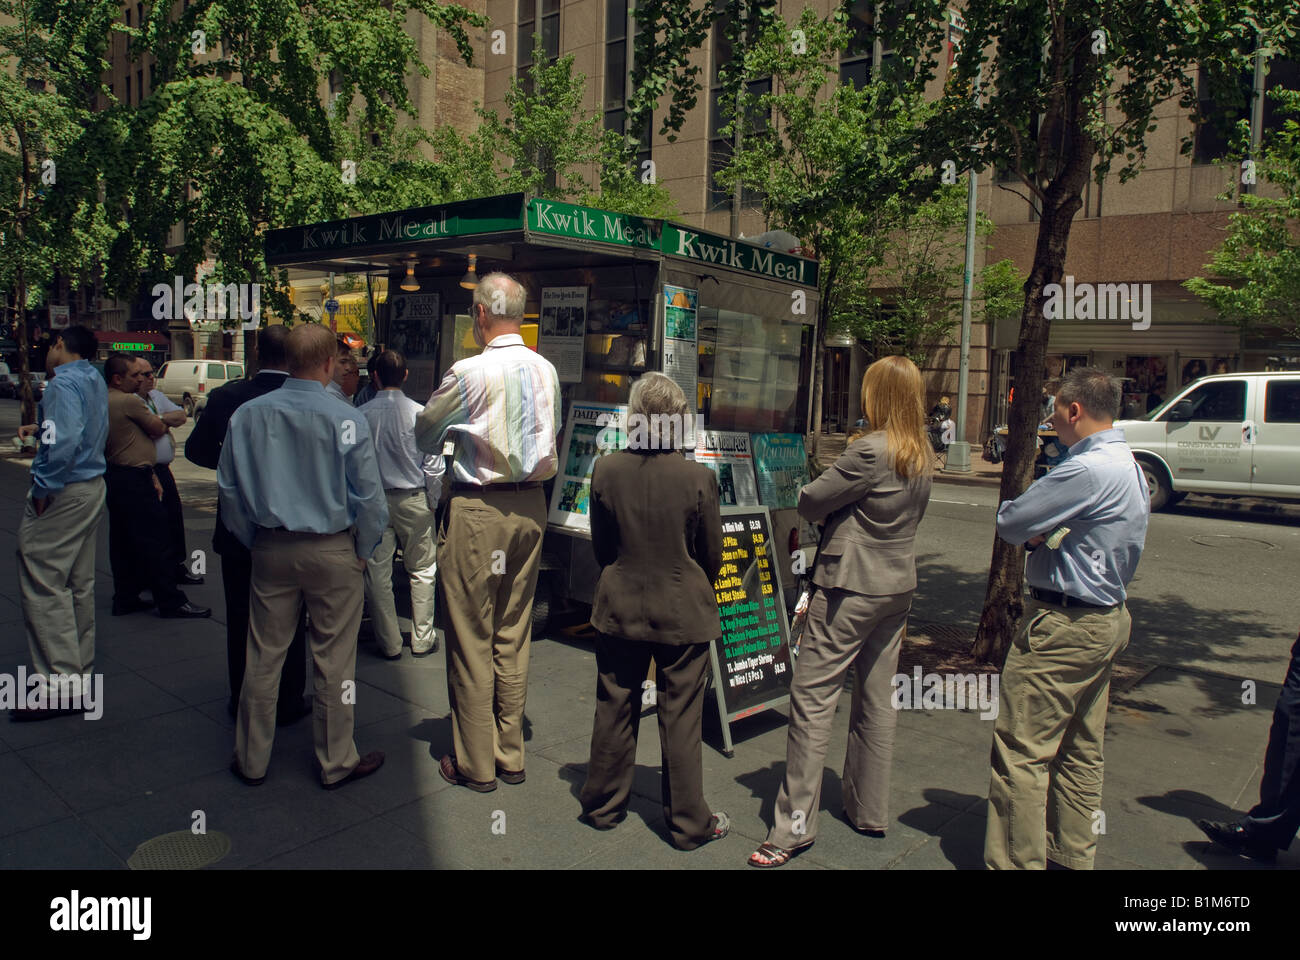 The Kwik Meal food vendor is seen in Midtown Manhattan in New York Stock Photo